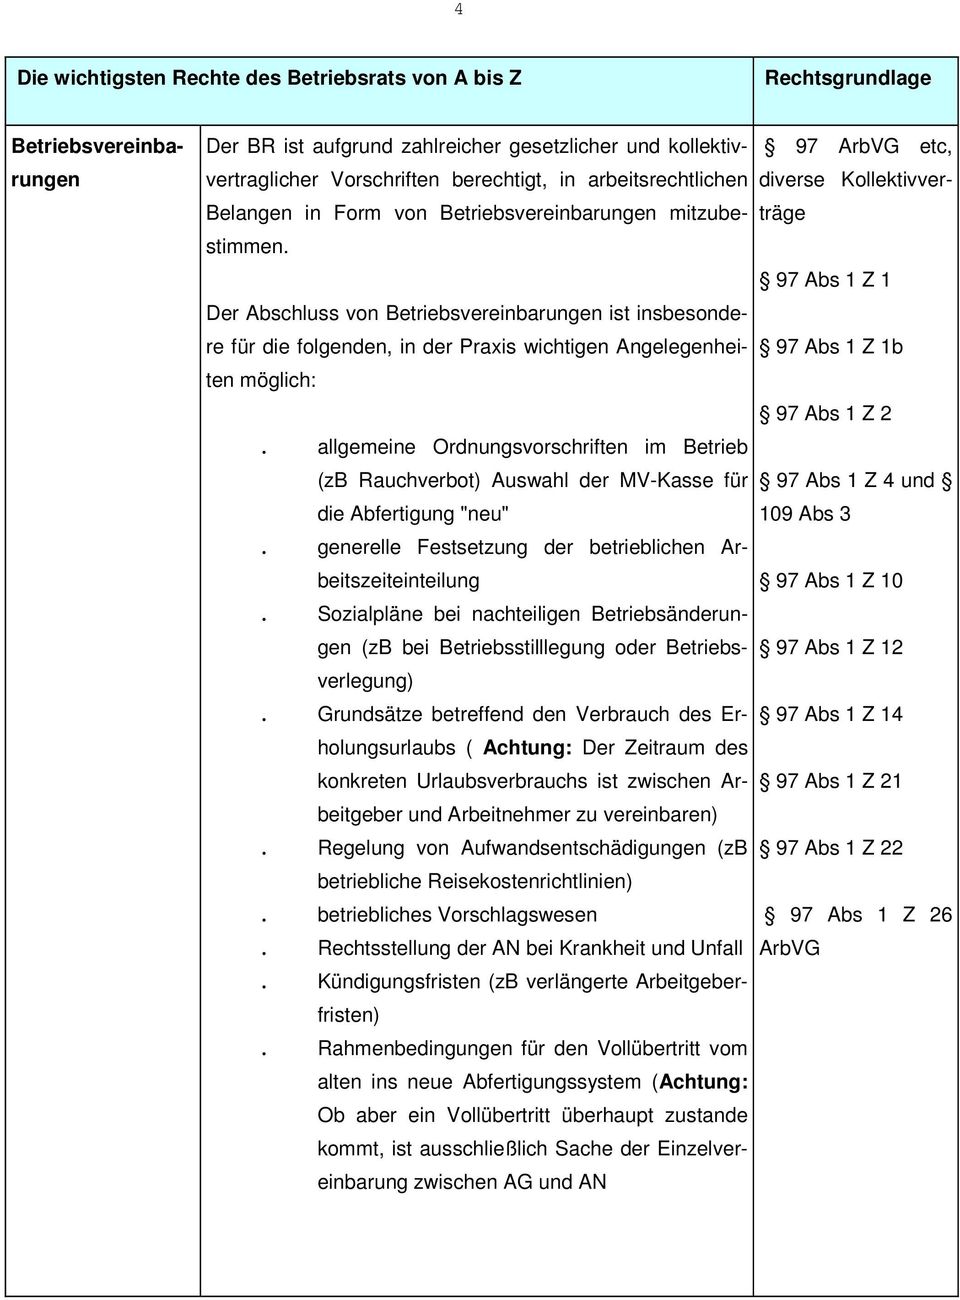 Abs 1 Z 2. allgemeine Ordnungsvorschriften im Betrieb (zb Rauchverbot) Auswahl der MV-Kasse für 97 Abs 1 Z 4 und die Abfertigung "neu" 109 Abs 3.